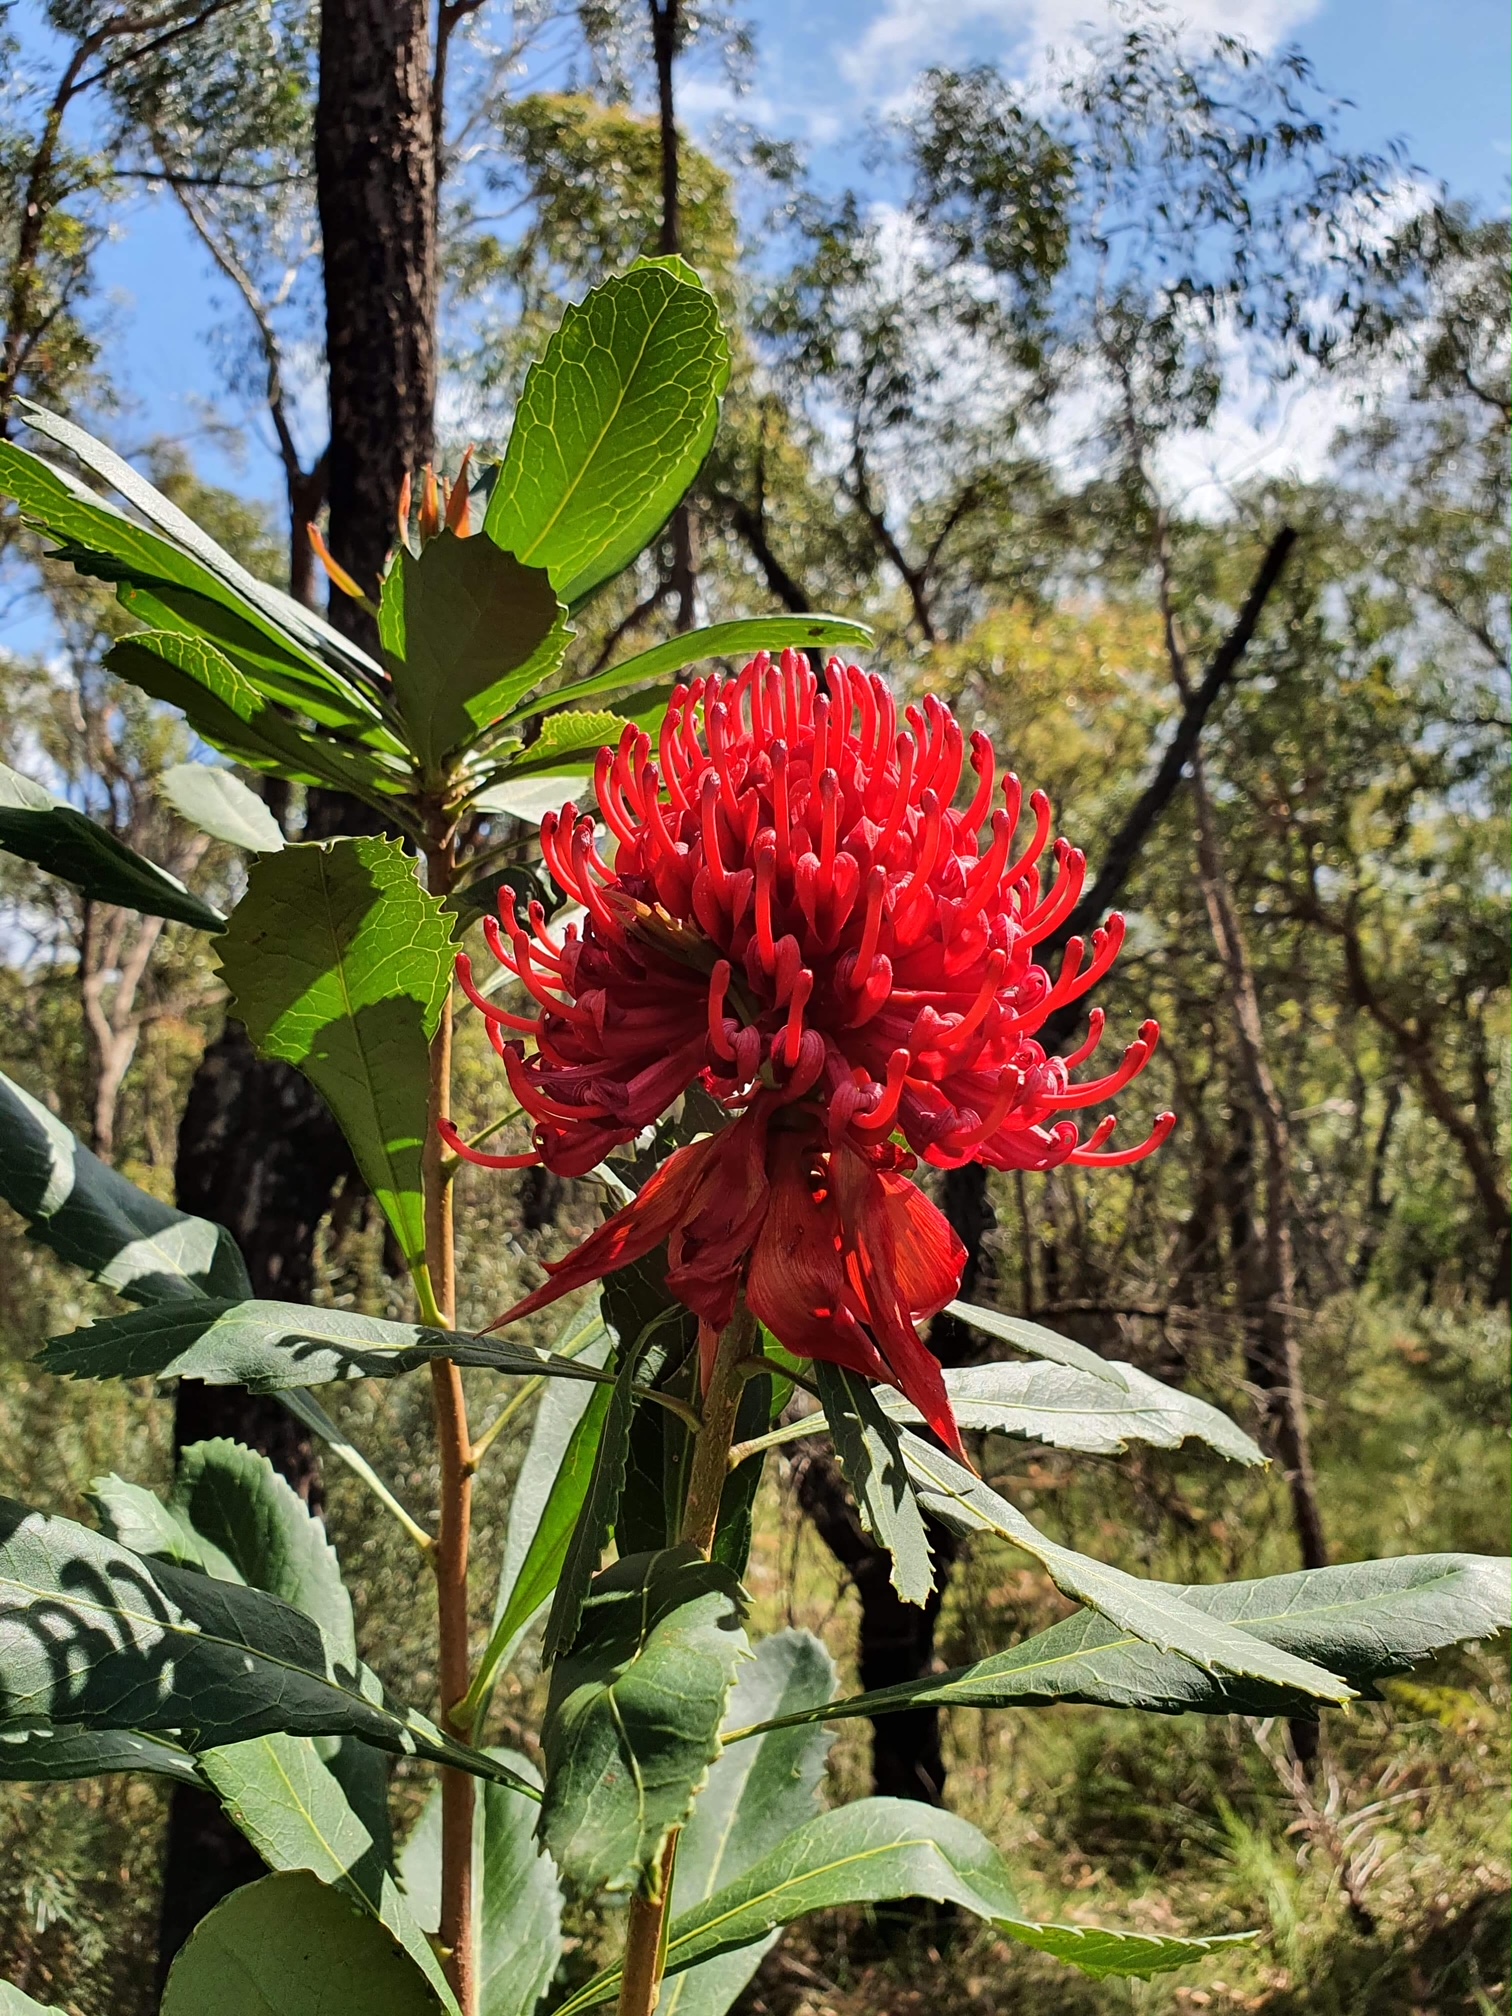 Waratah - floral symbol of NSW